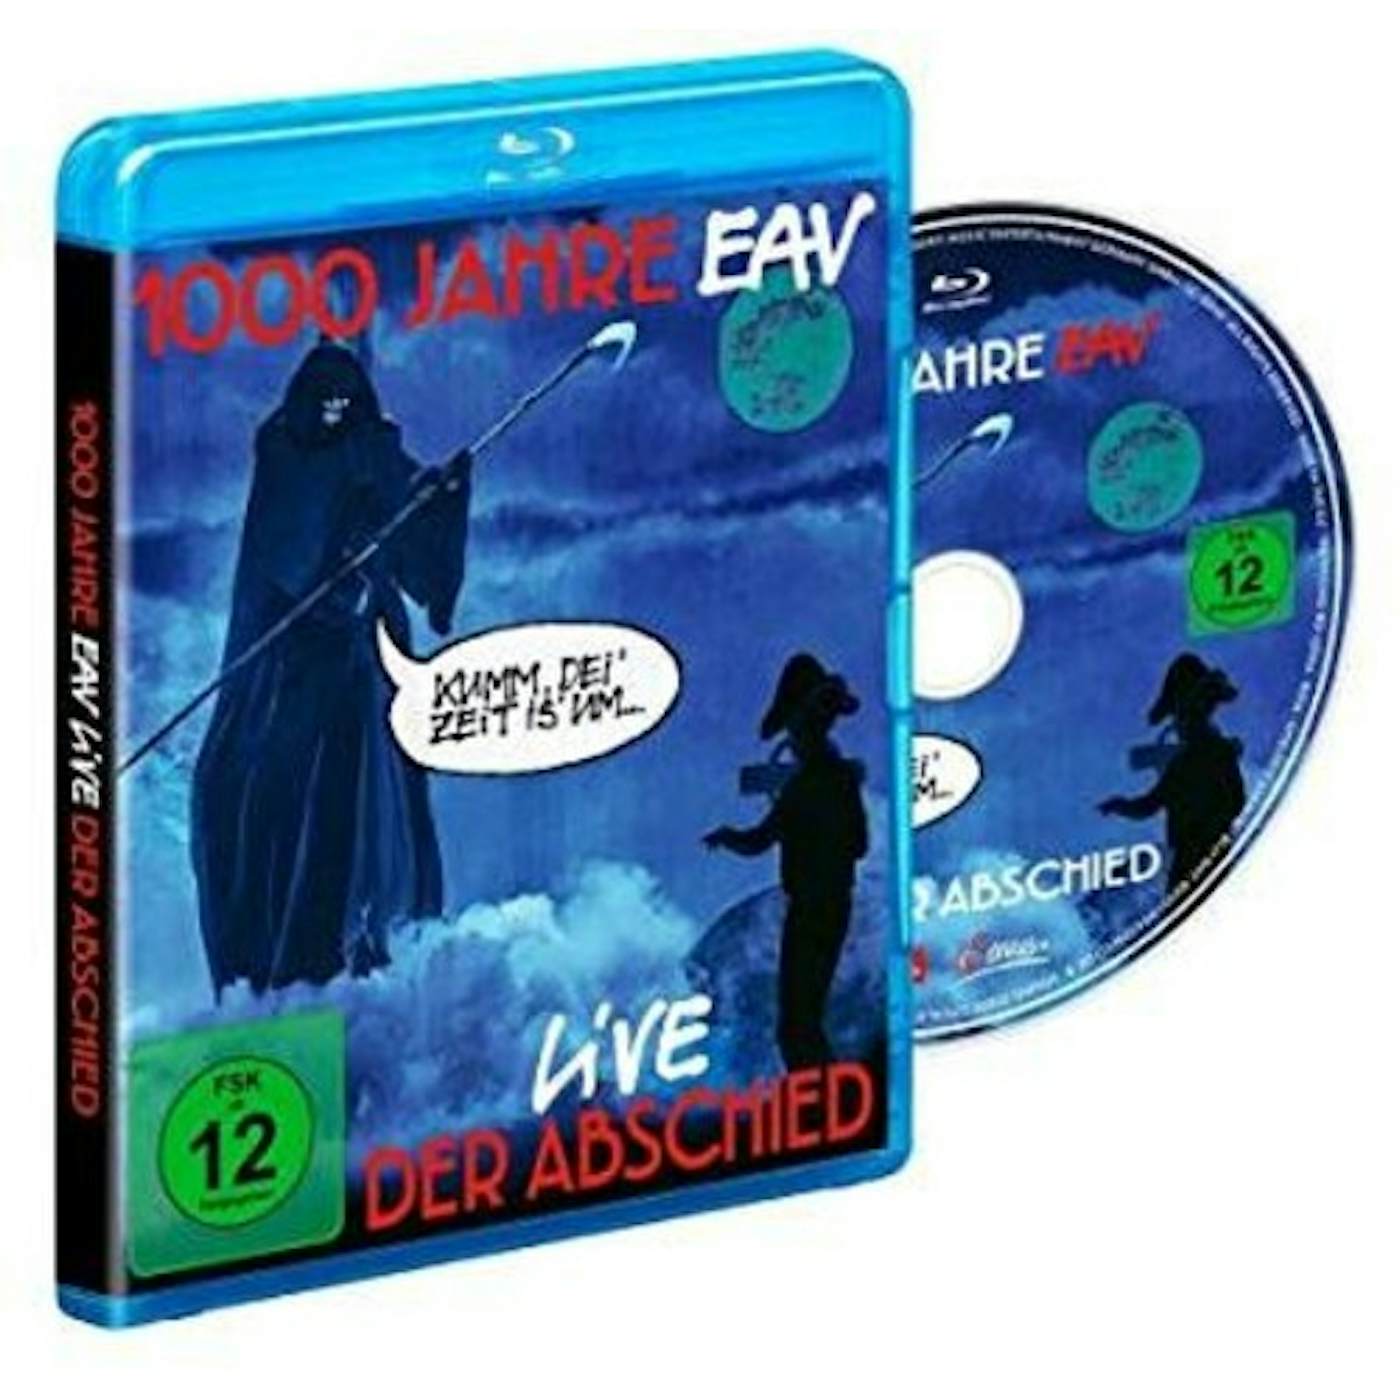 1000 JAHRE EAV LIVE: DER ABSCHIED Blu-ray